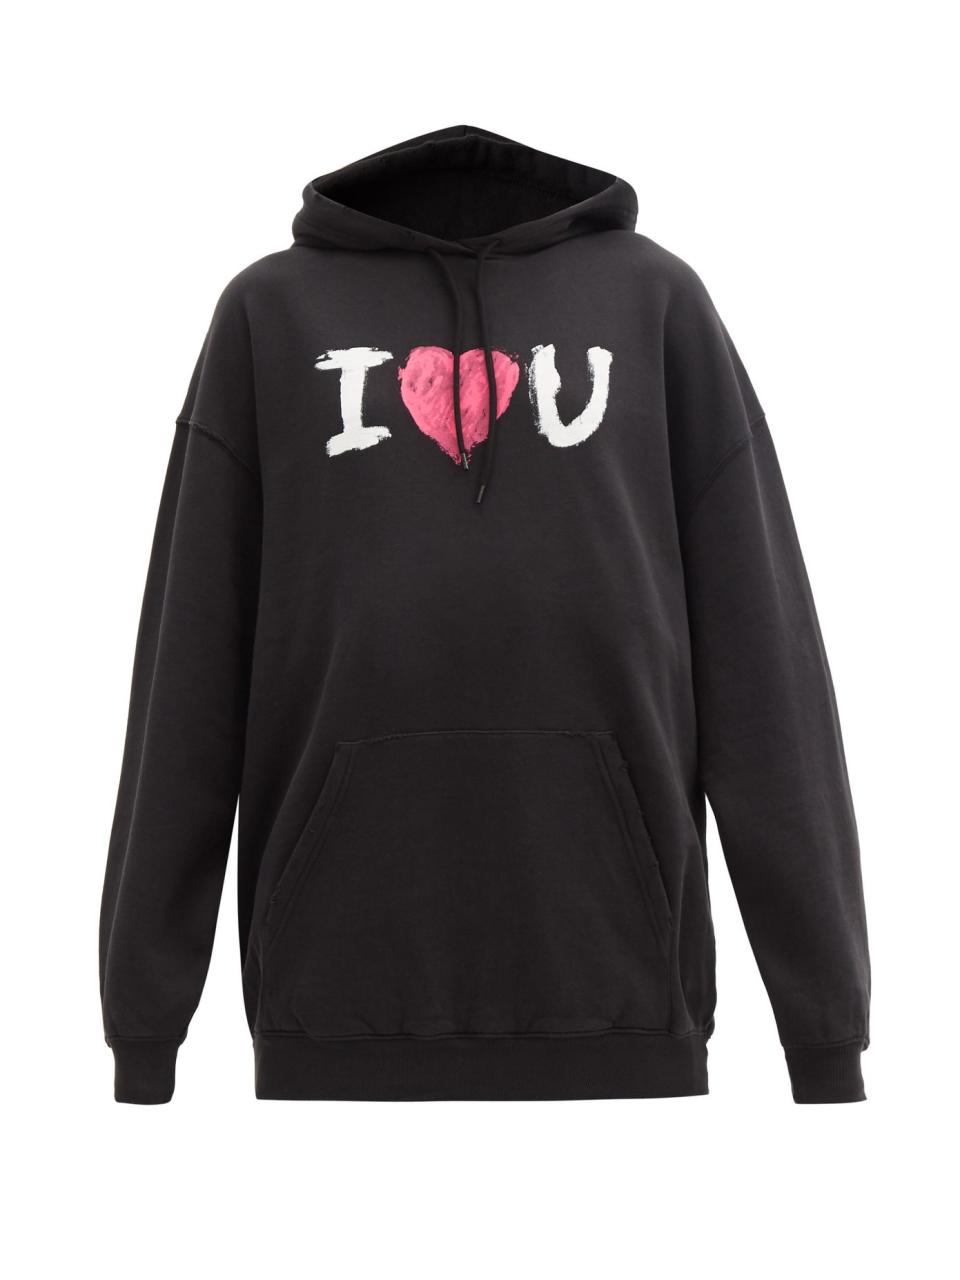 8 Unisex Valentine's Day Gifts: Balenciaga Valentine Sweatshirt